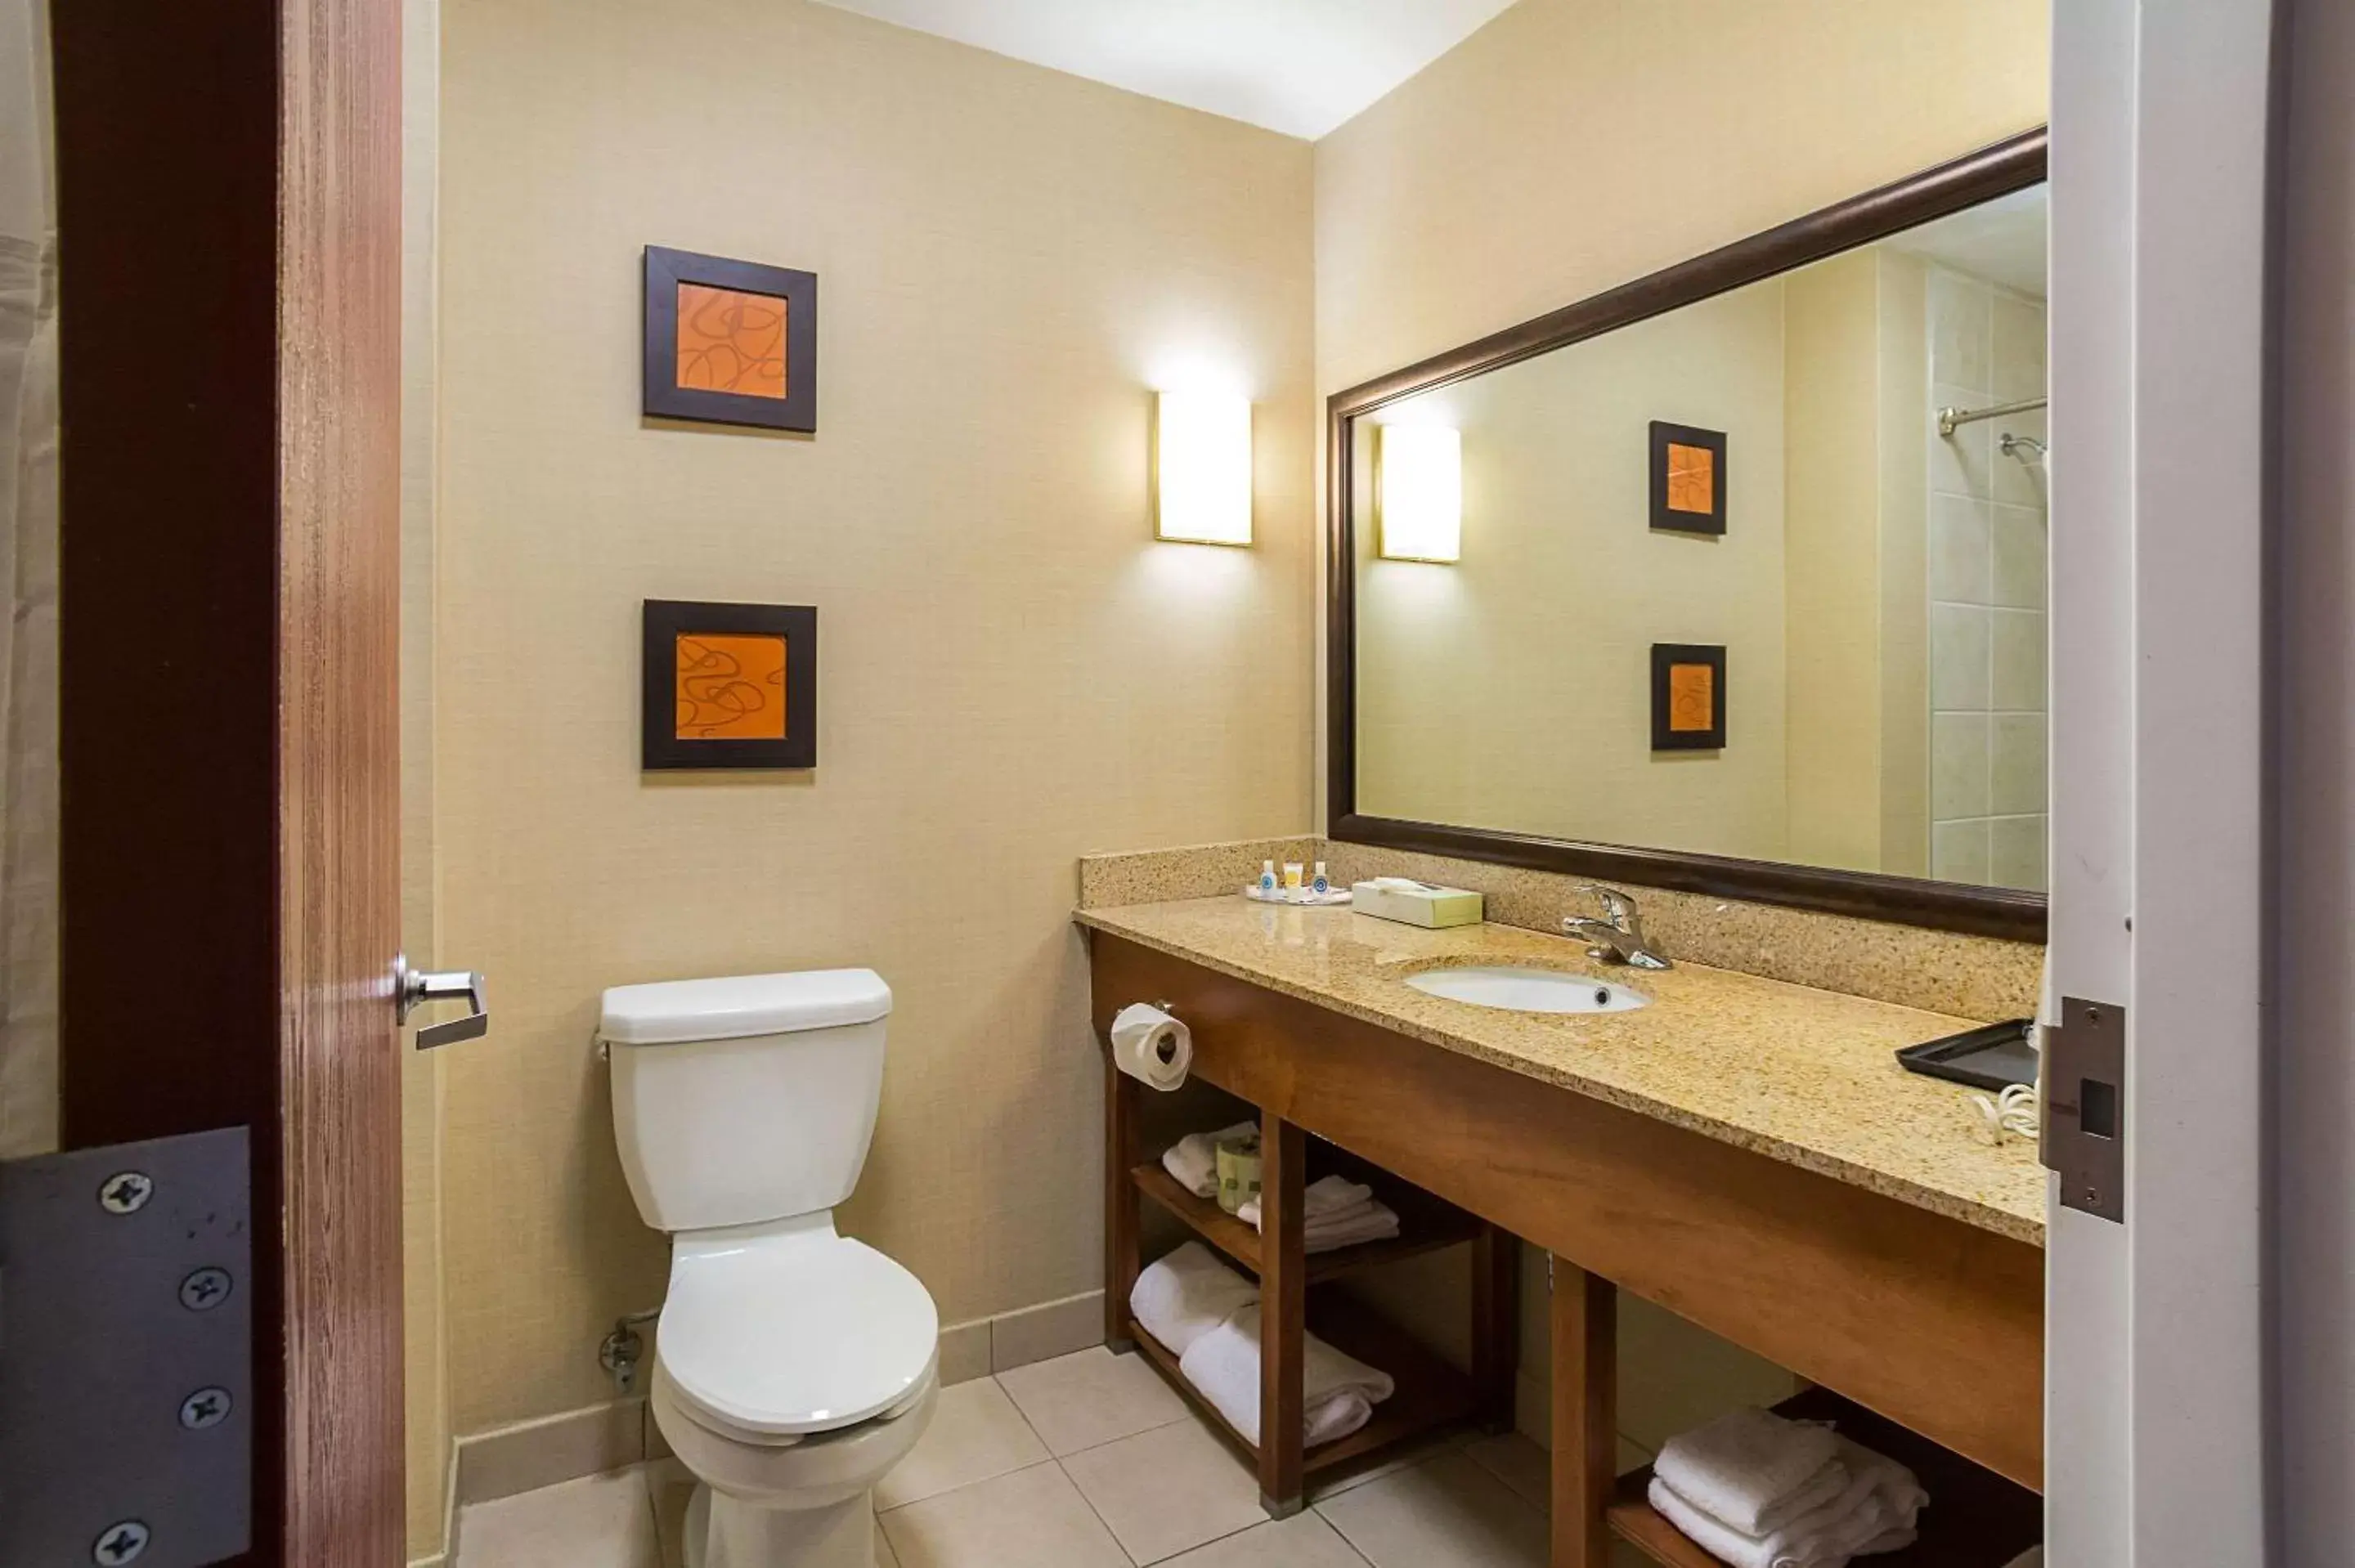 Toilet, Bathroom in Comfort Suites Twinsburg